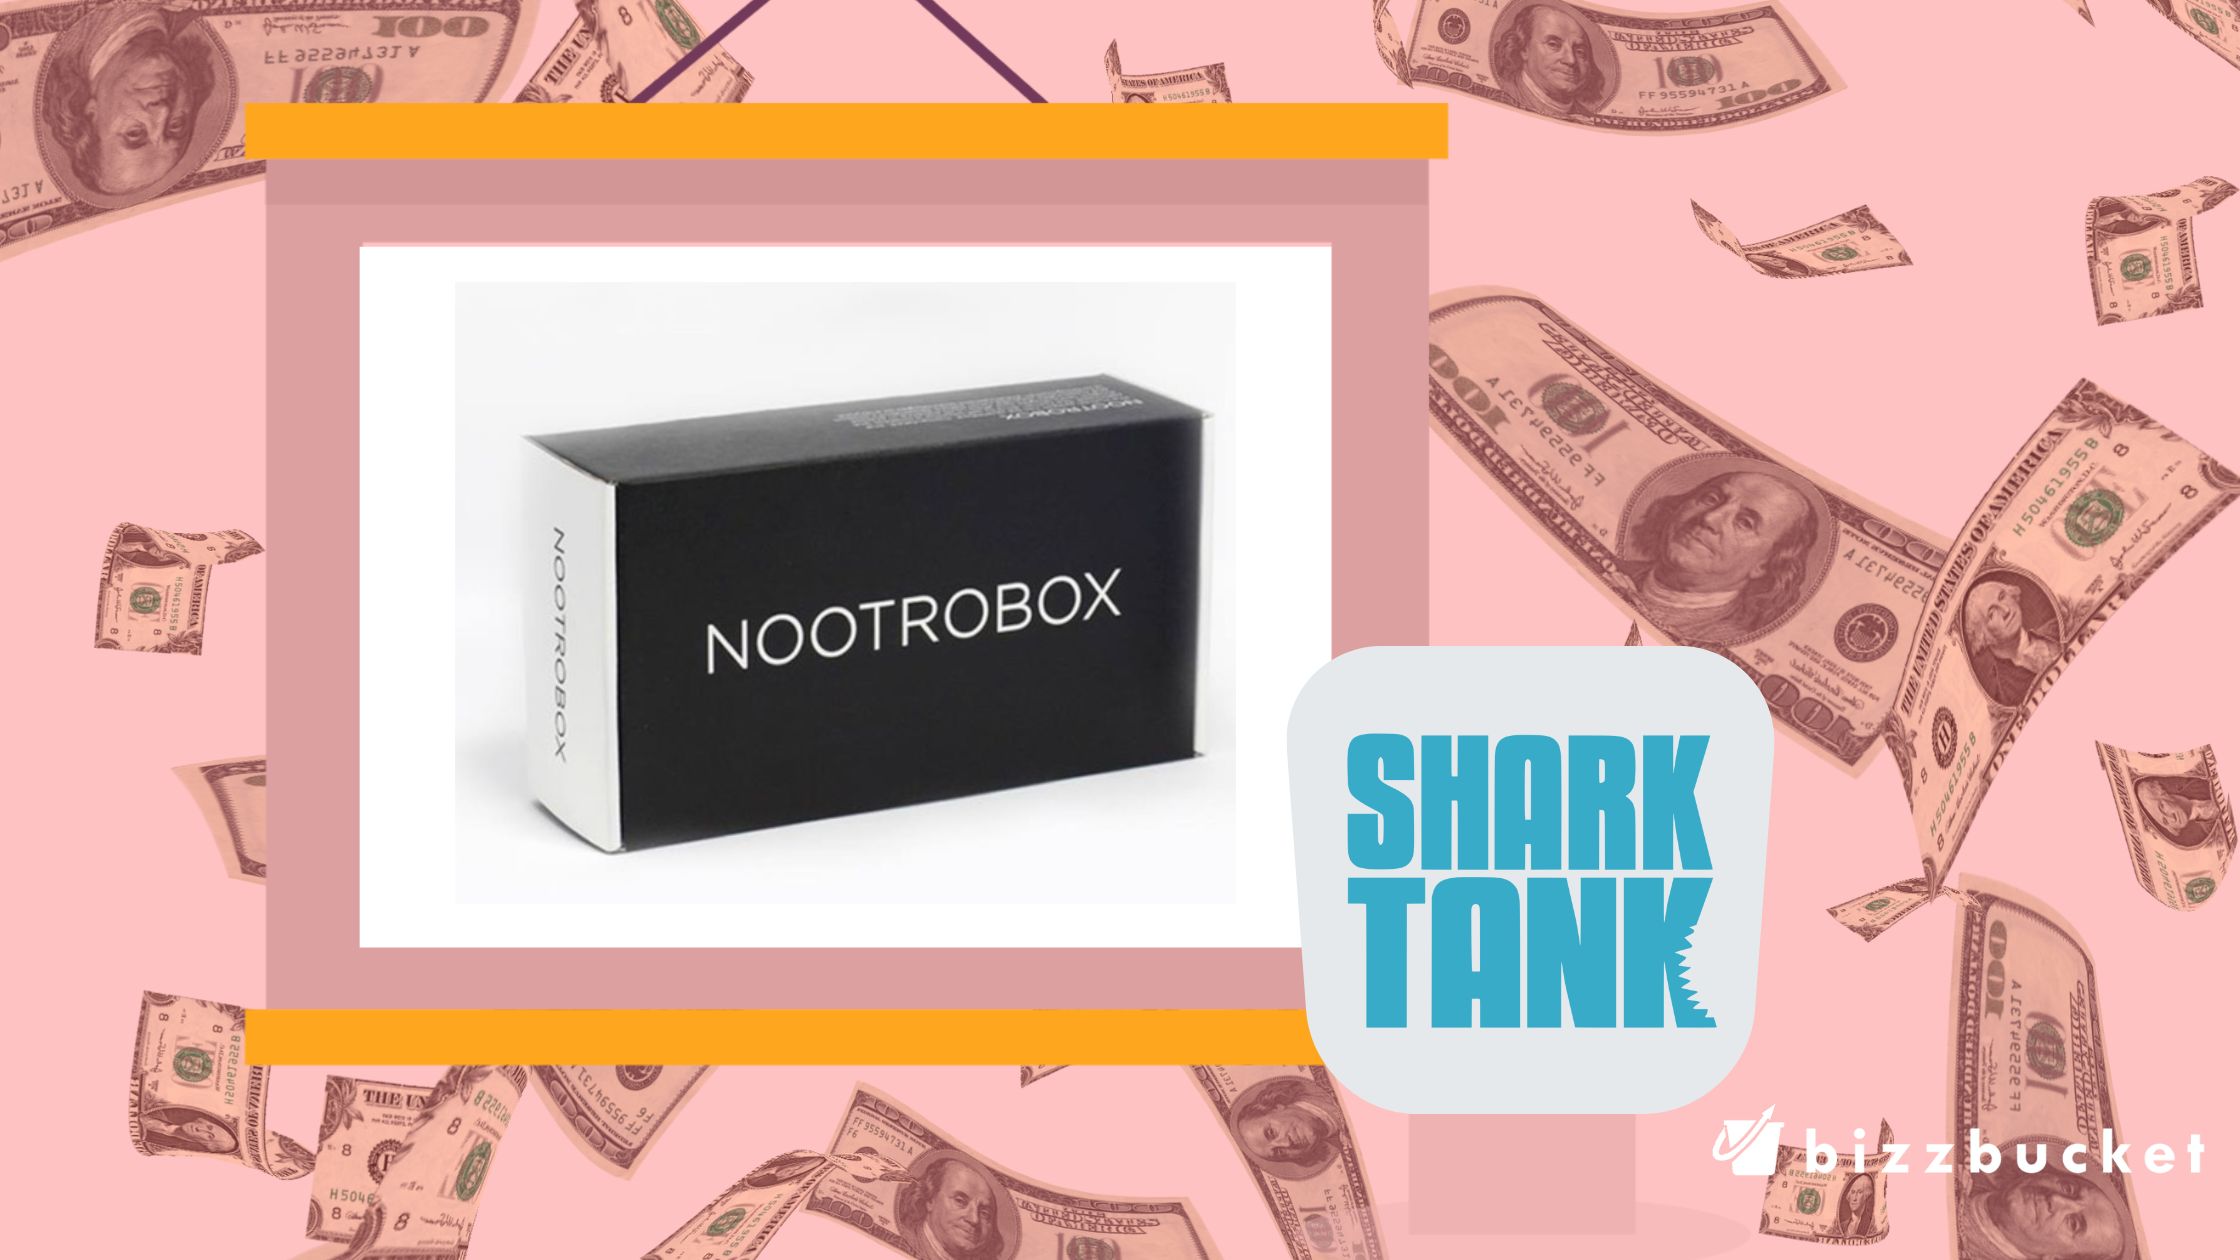 NootroBox shark tank update